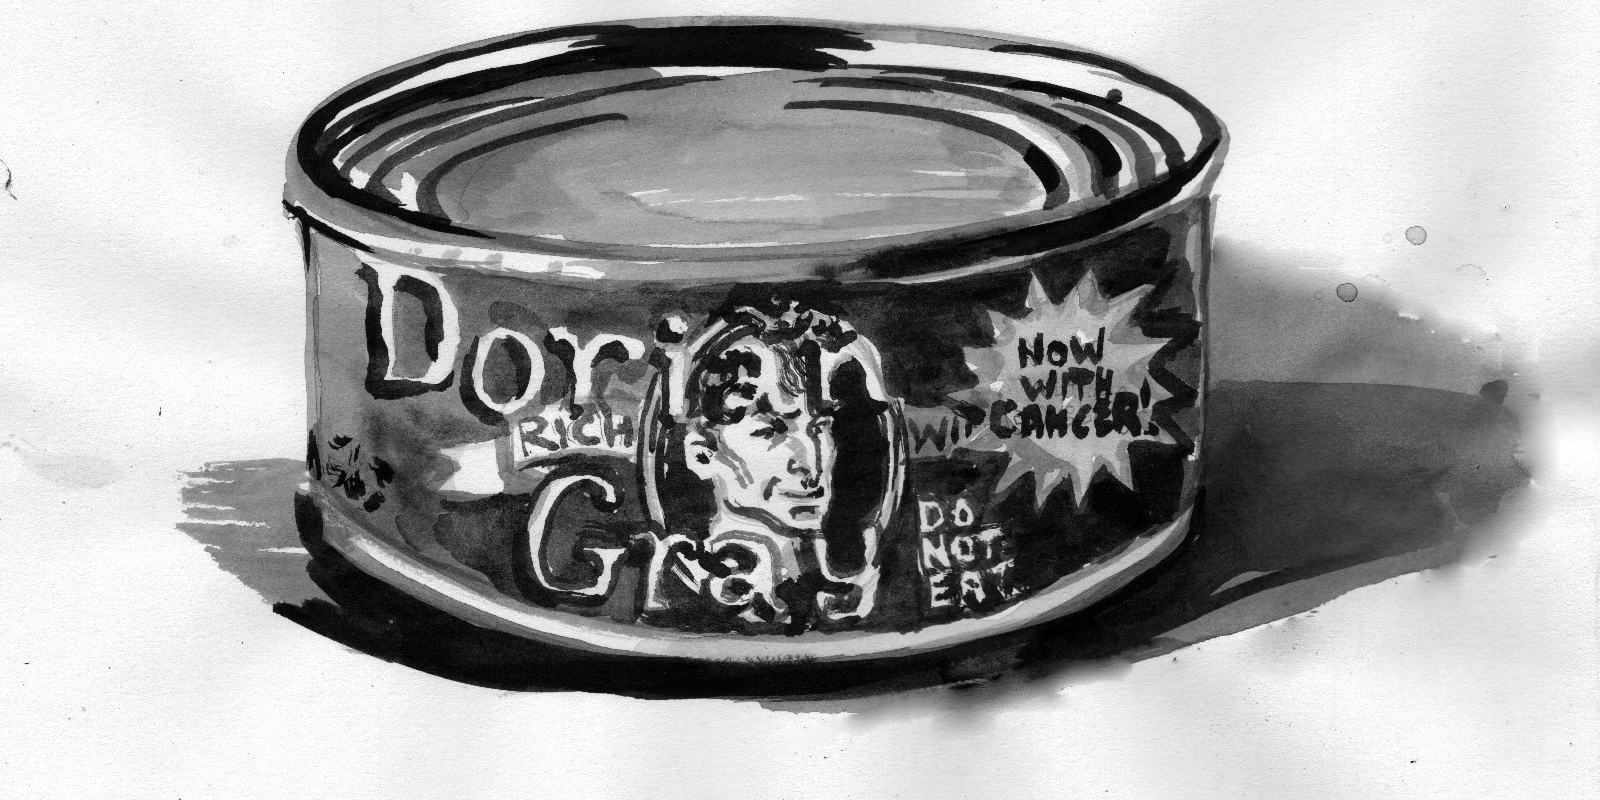 The Tinning of Dorian Grey, by <a href="http://bruesselbach.com">Janet Brusselbach</a>